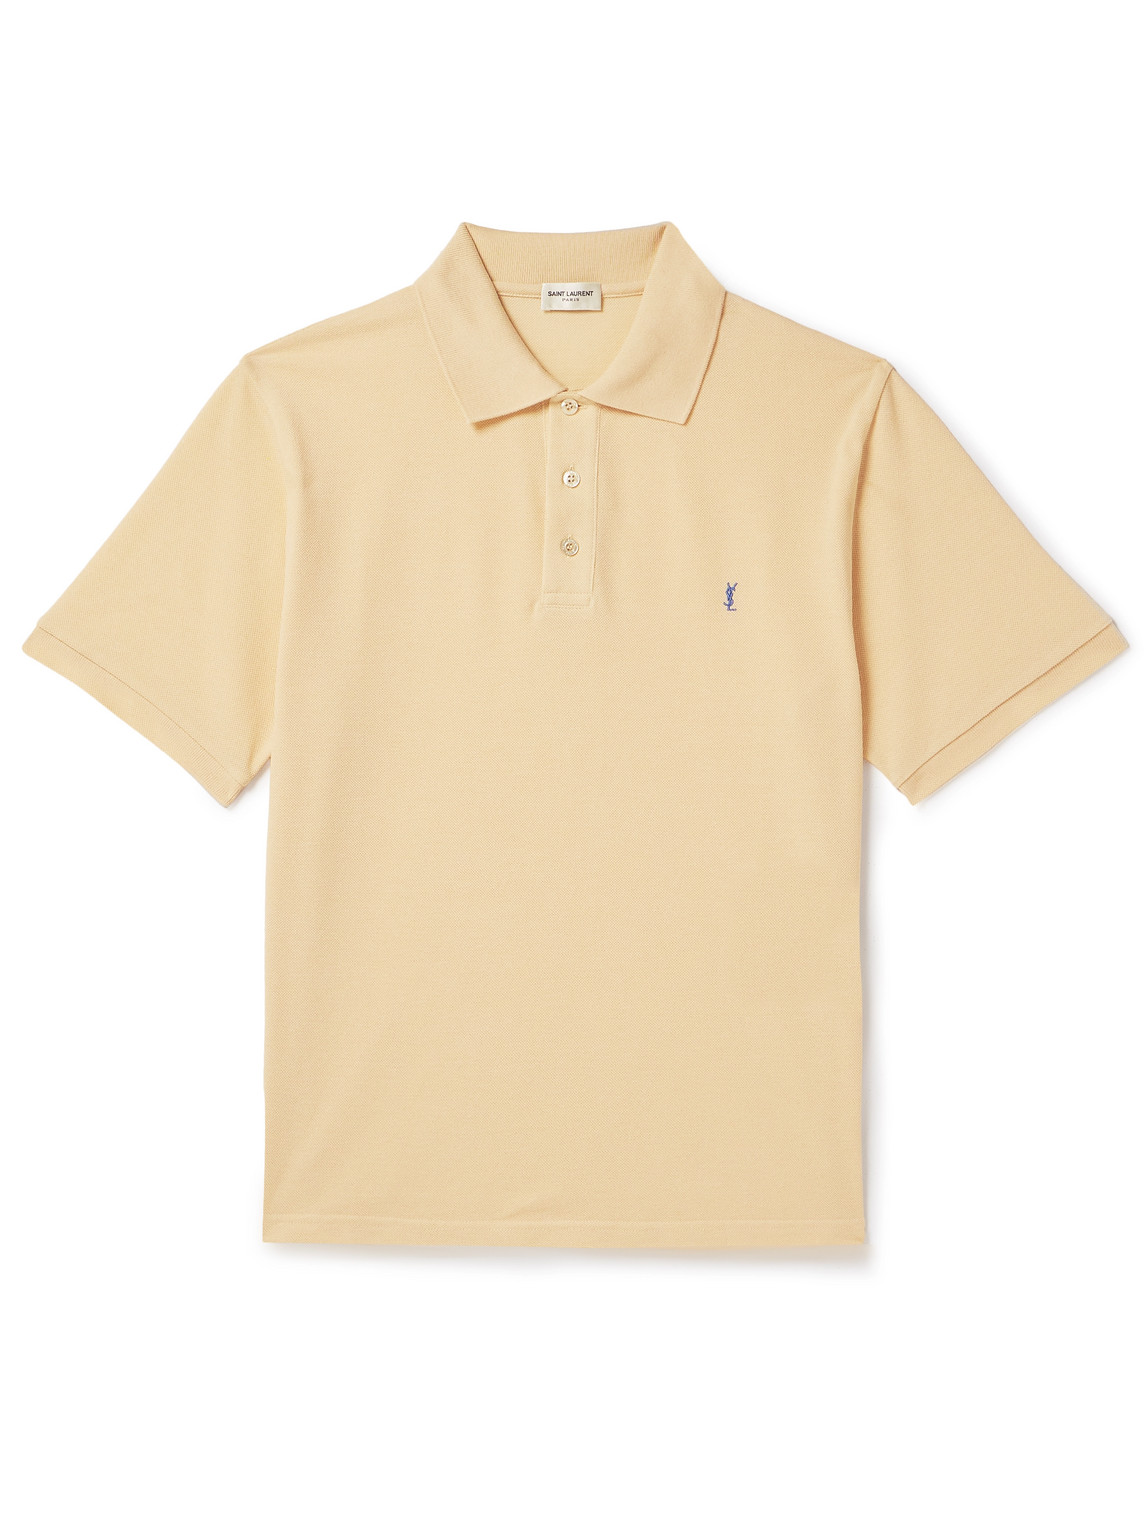 SAINT LAURENT - Logo-Embroidered Cotton-Blend Piqué Polo Shirt - Men - Yellow - S von SAINT LAURENT